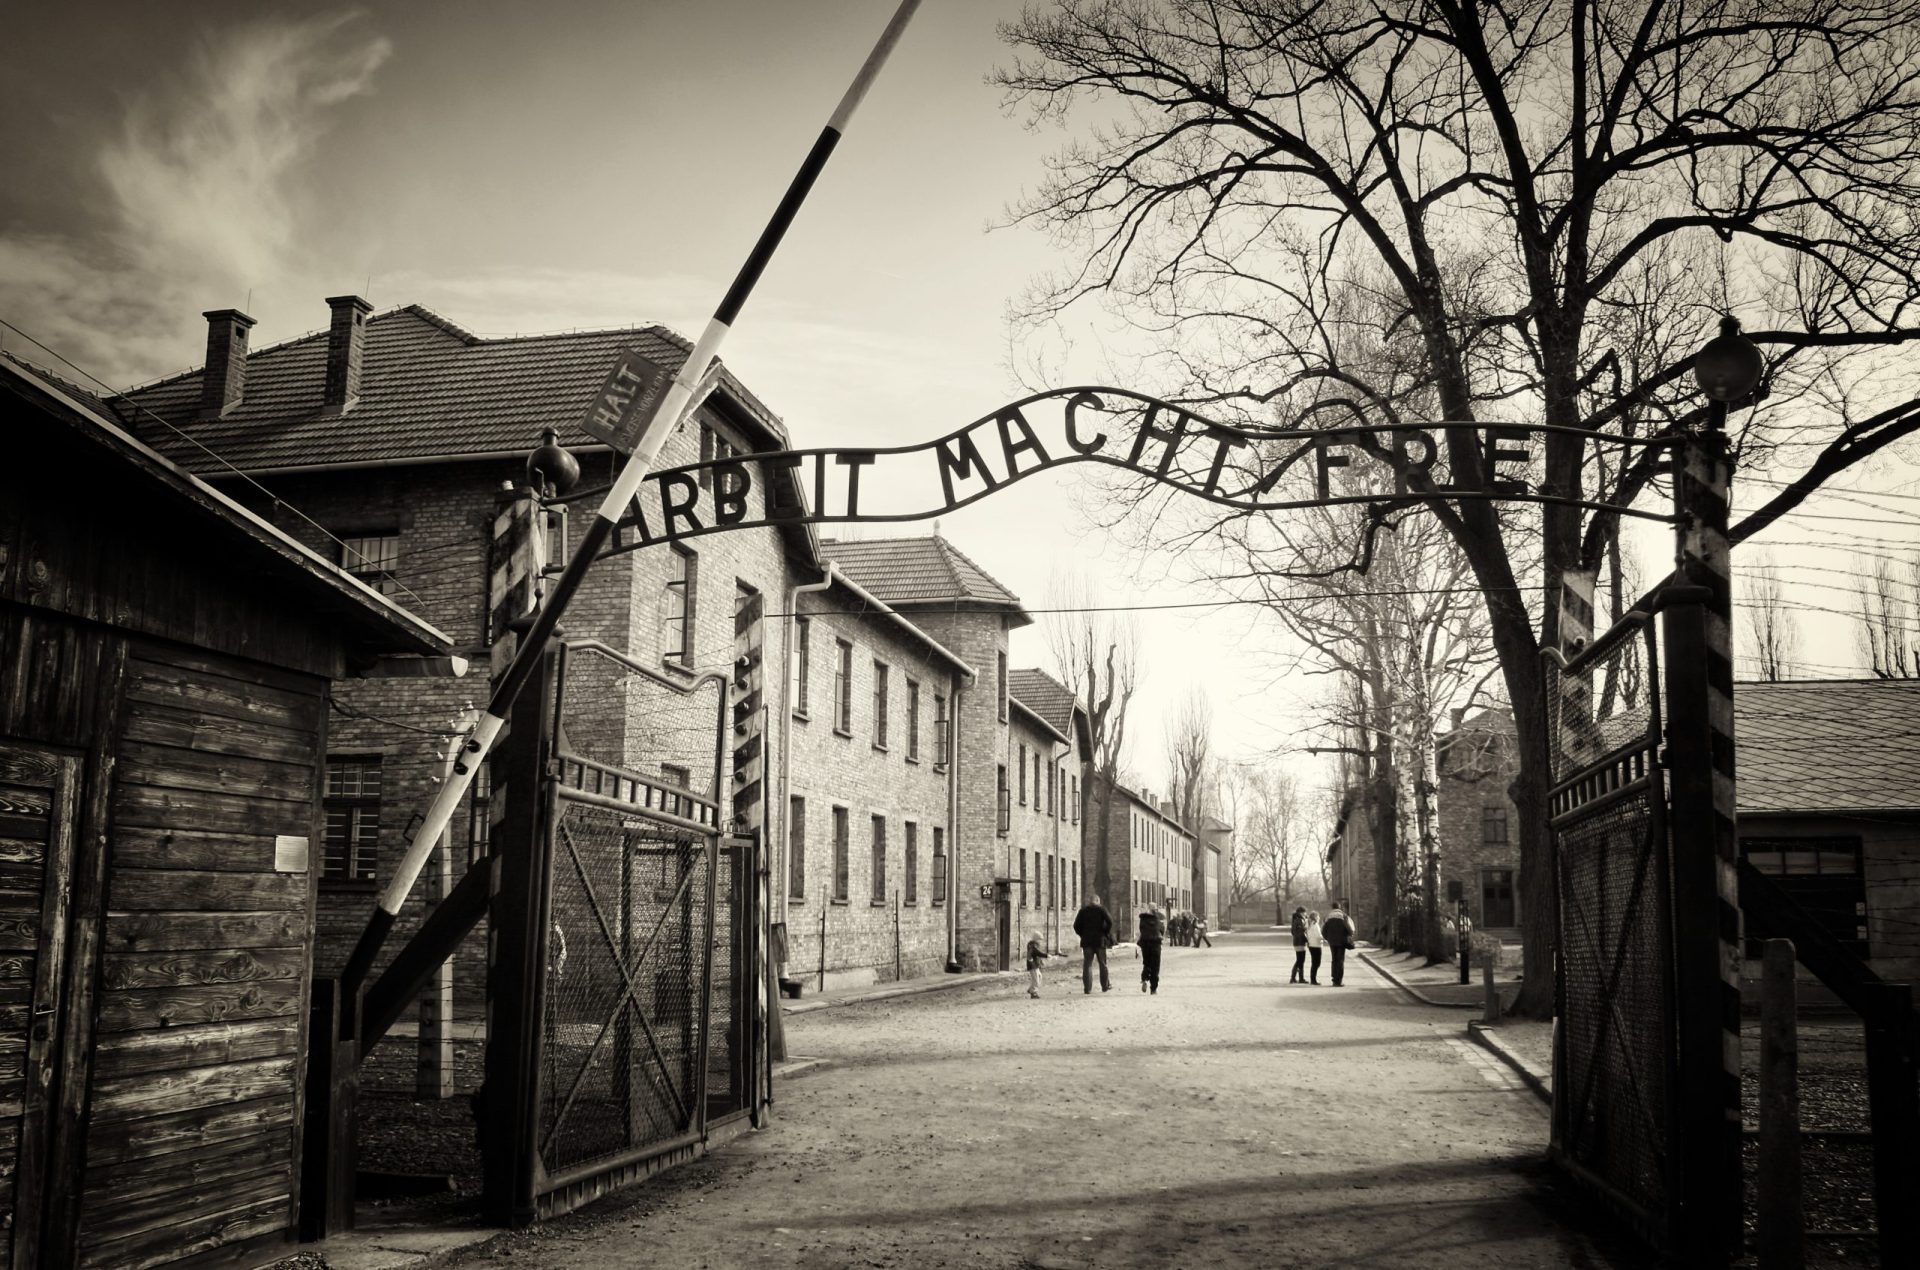 Turistas criticam Auschwitz no TripAdvisor